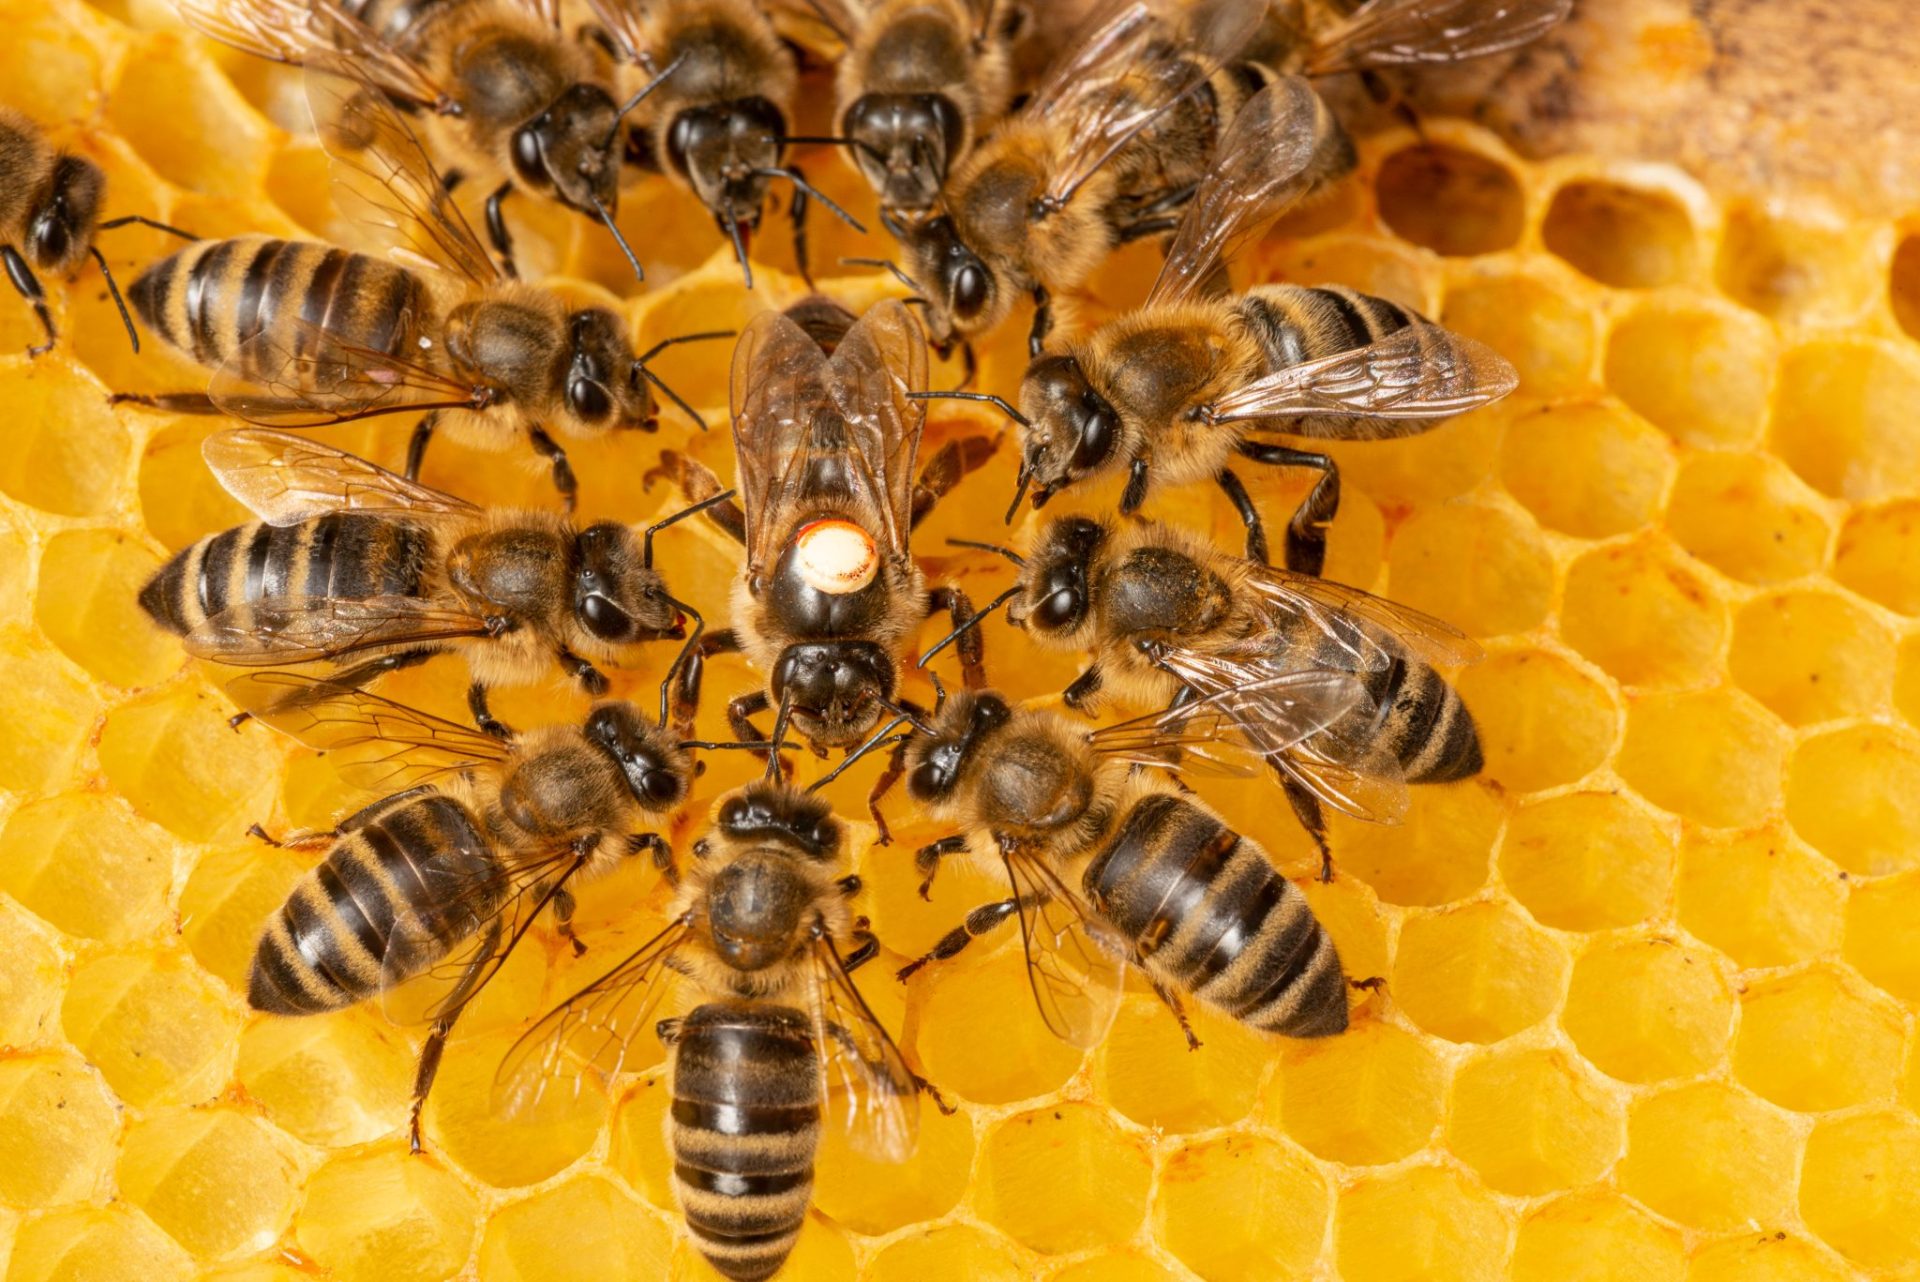 Combine Honeybee Colonies - Worker Bees Gathering Around the Queen